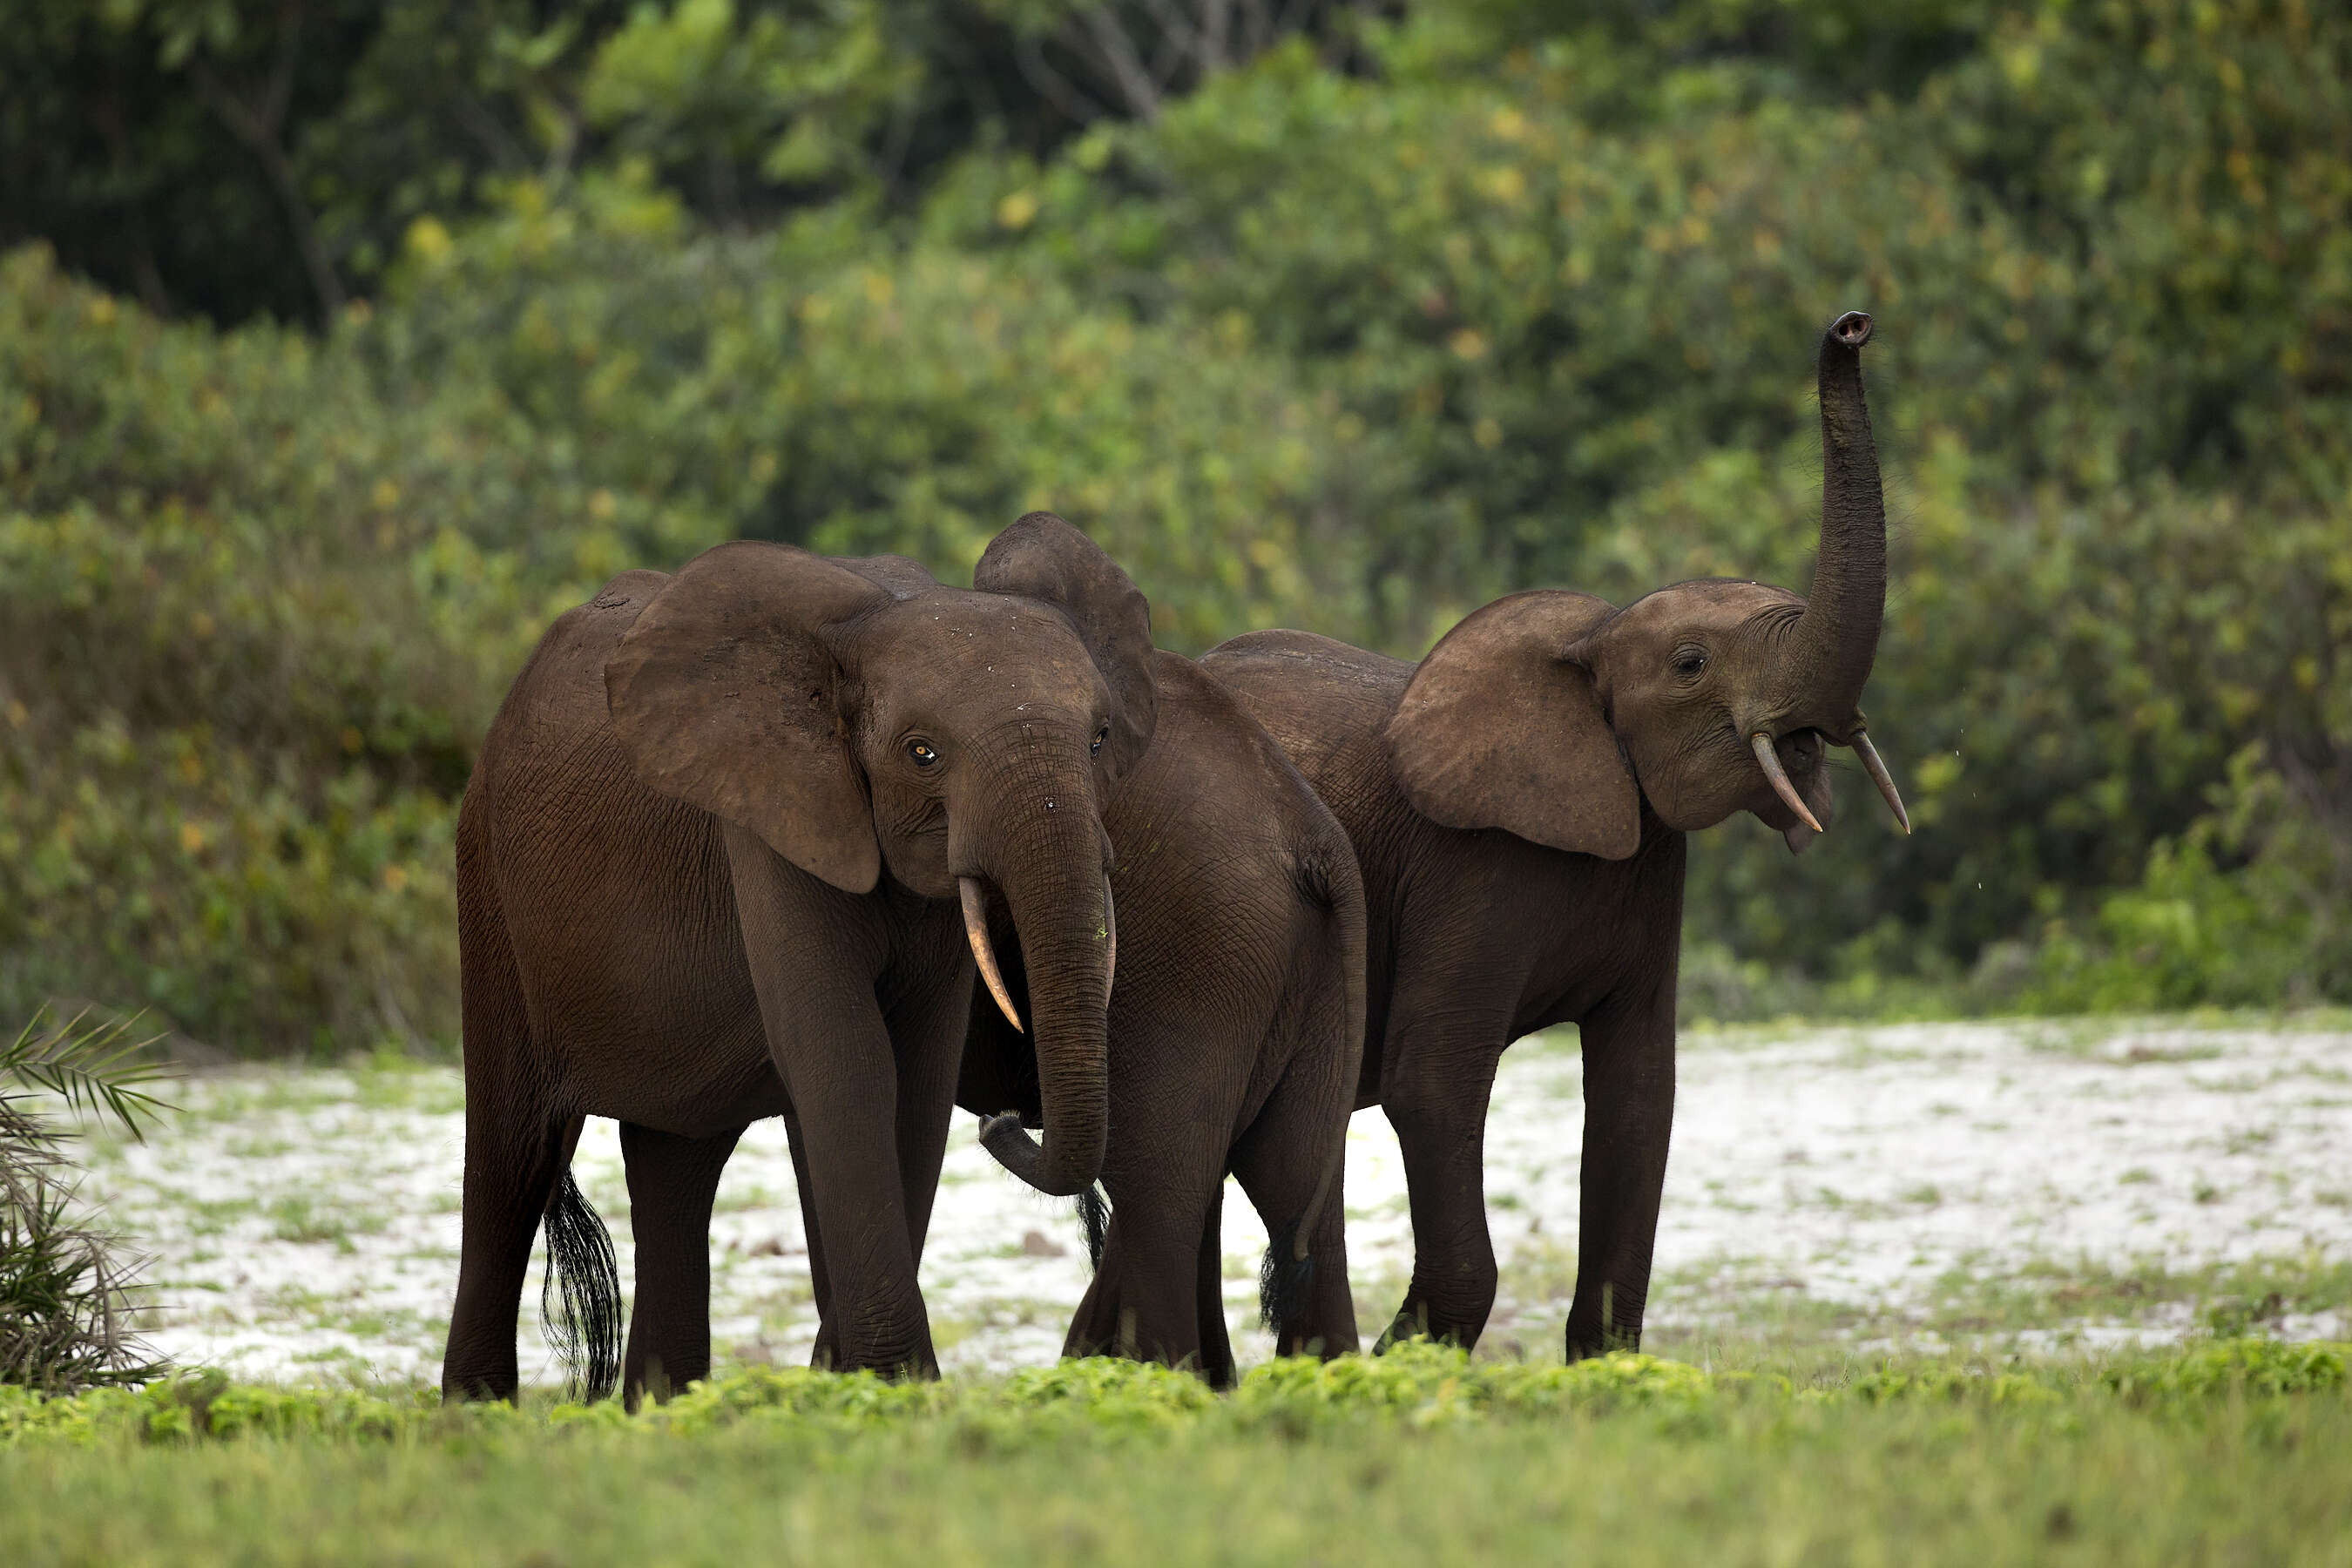 Gabon forest elephants